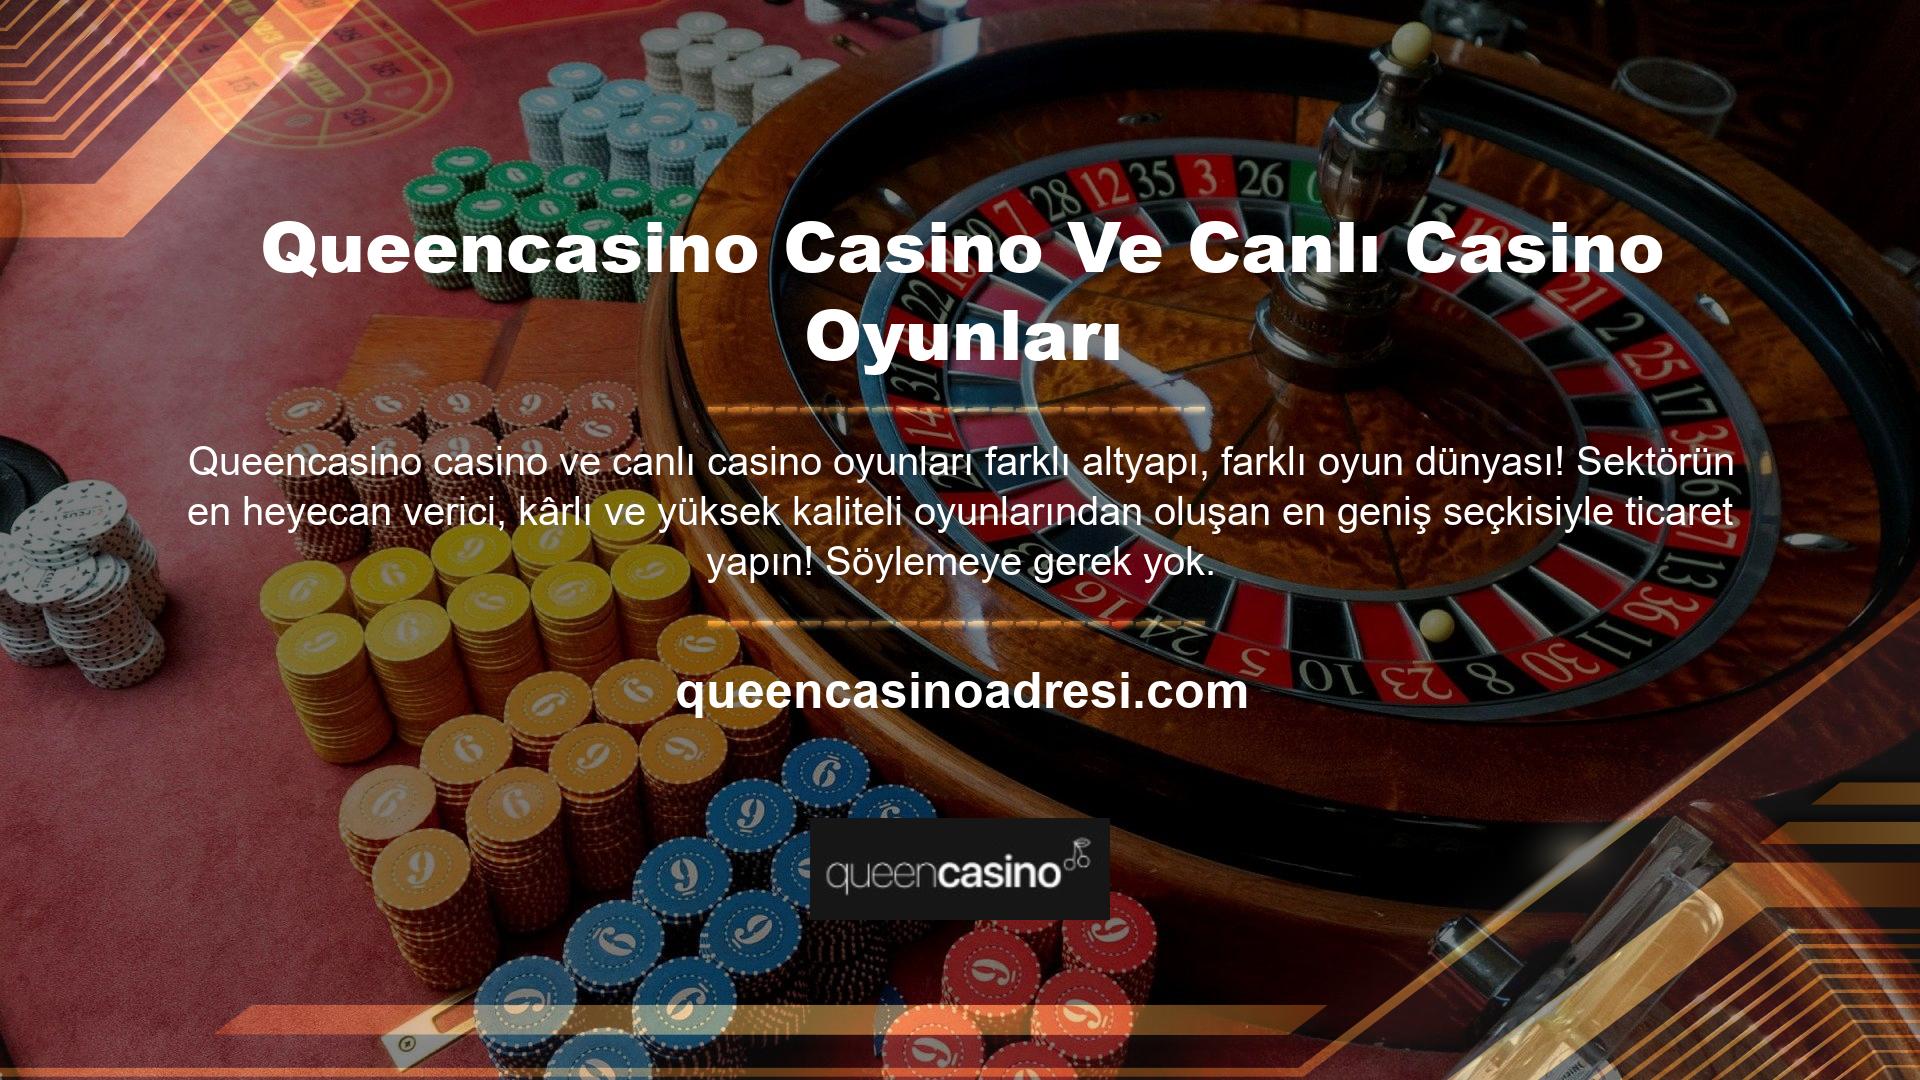 Biz de bu yüzden vakit kaybetmeden Queencasino Casino'nun slot bölümüne göz atmaya karar verdik